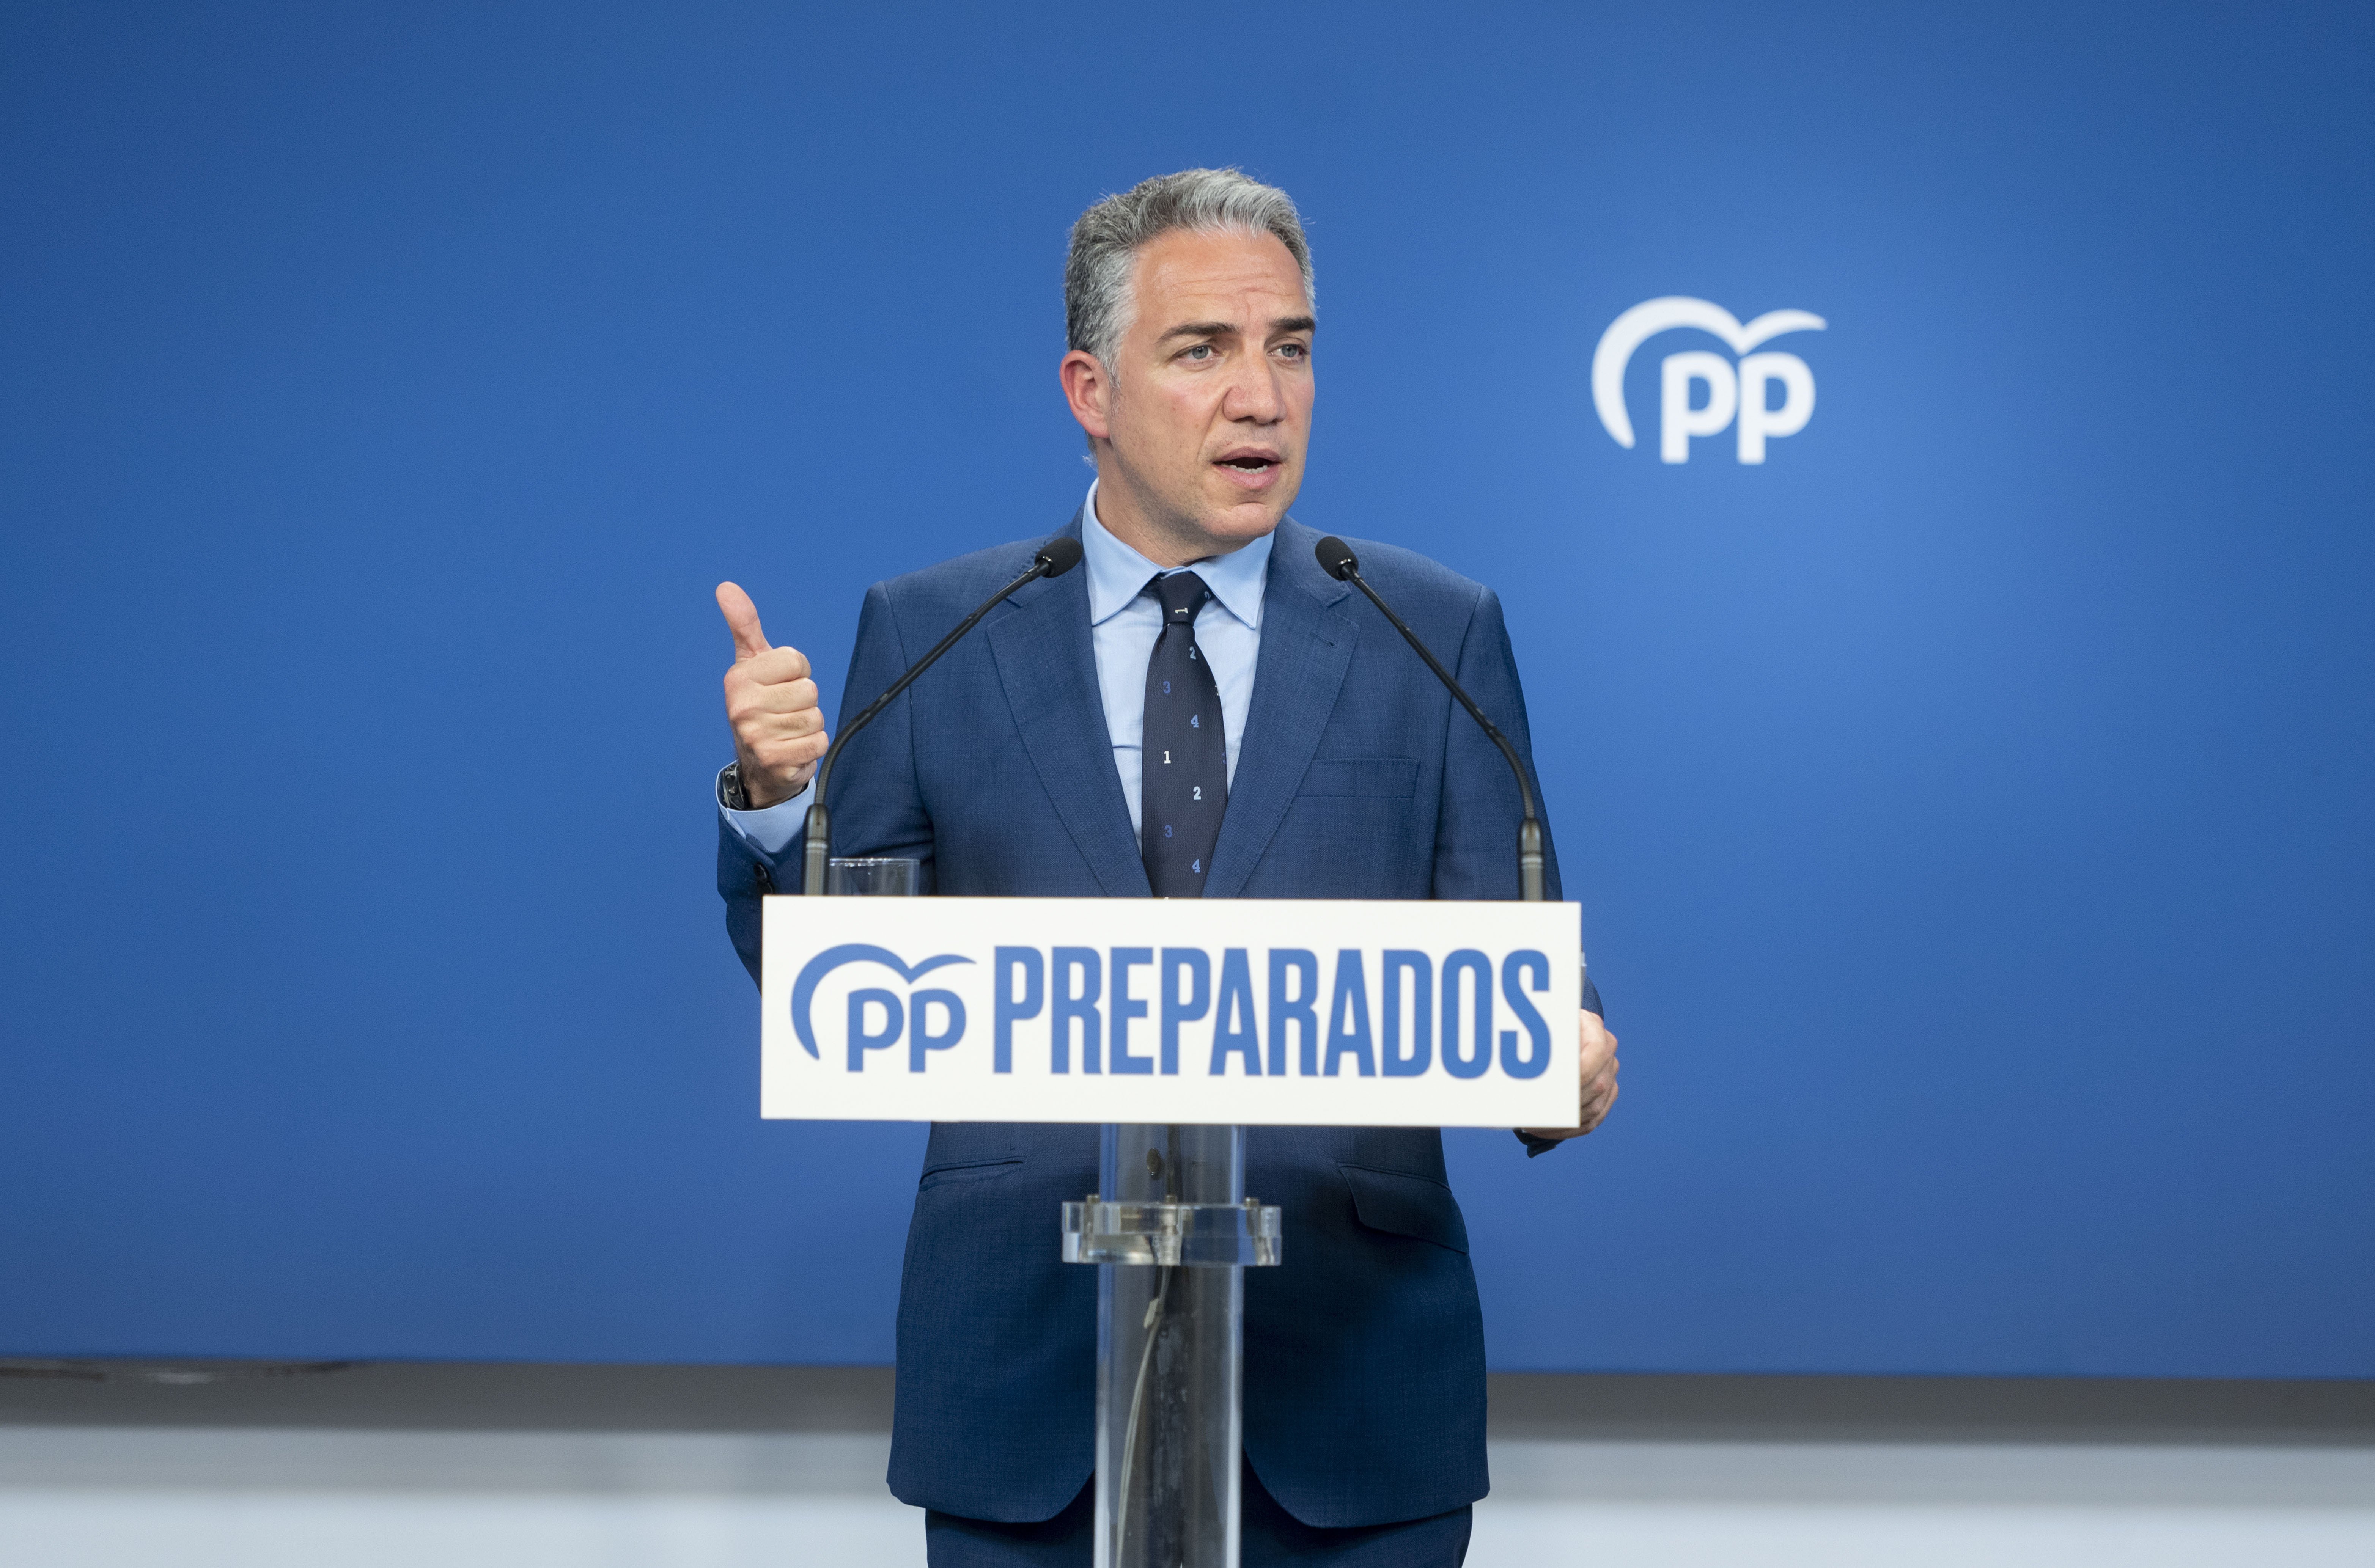 El PP votarà en contra del decret energètic si La Moncloa no retira "frivolitats" del text